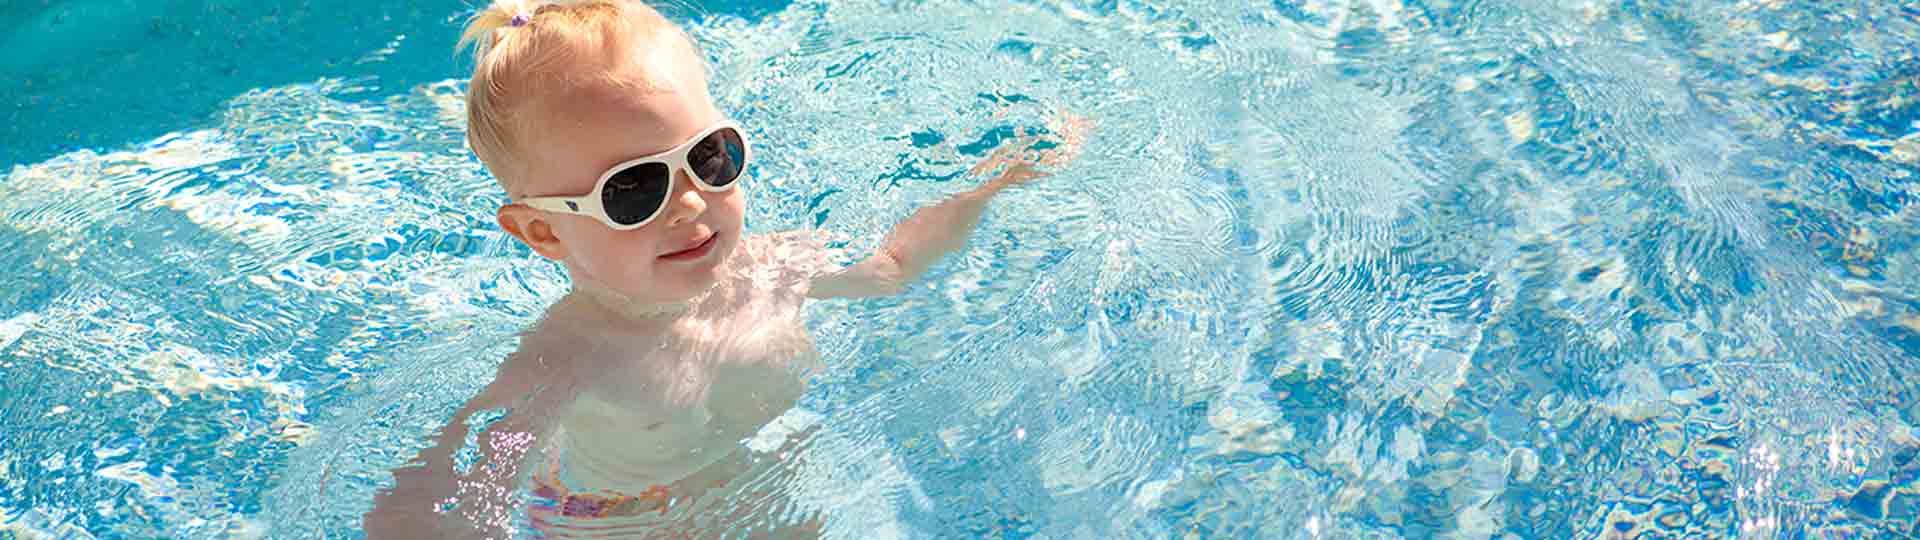 como cuidar y proteger bebe piscina detalle